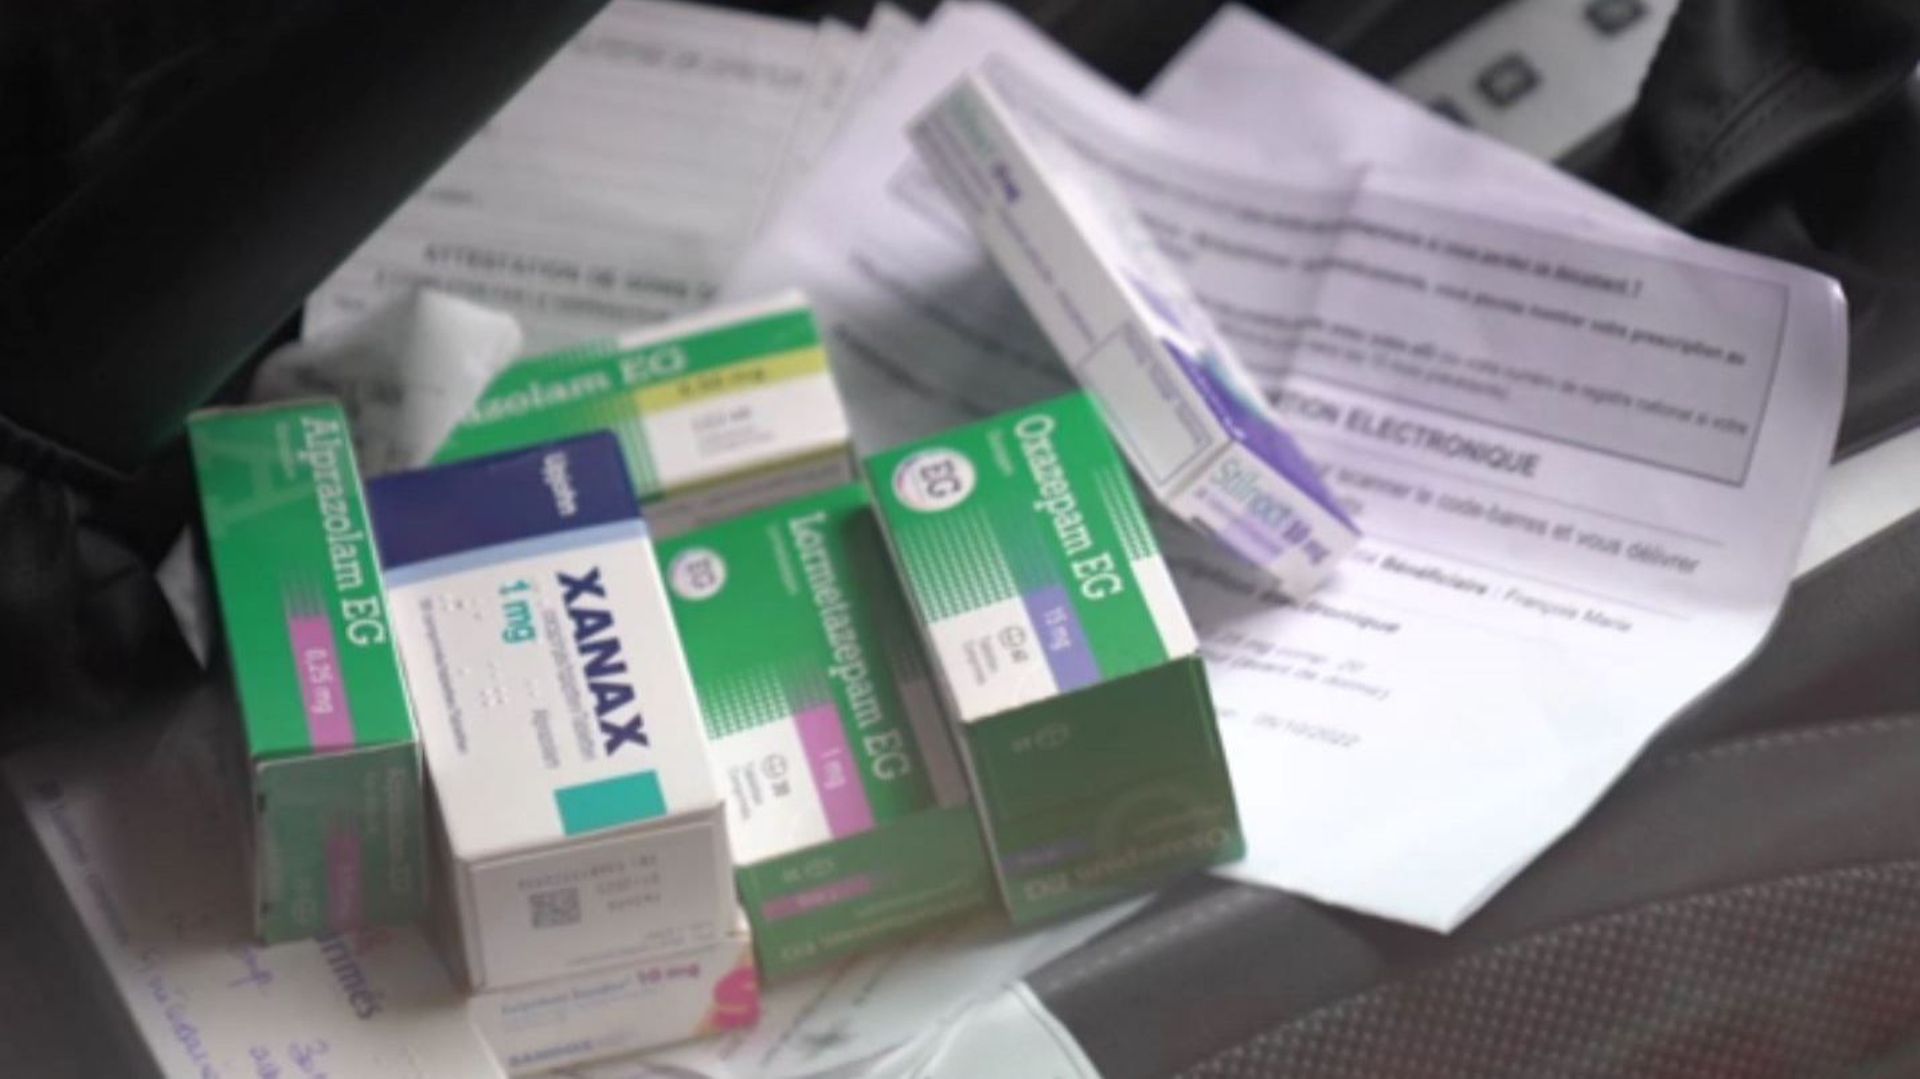 Sur 8 médecins, un seul nous a prescrit une boîte de benzodiazépines avec petit nombre de comprimés.